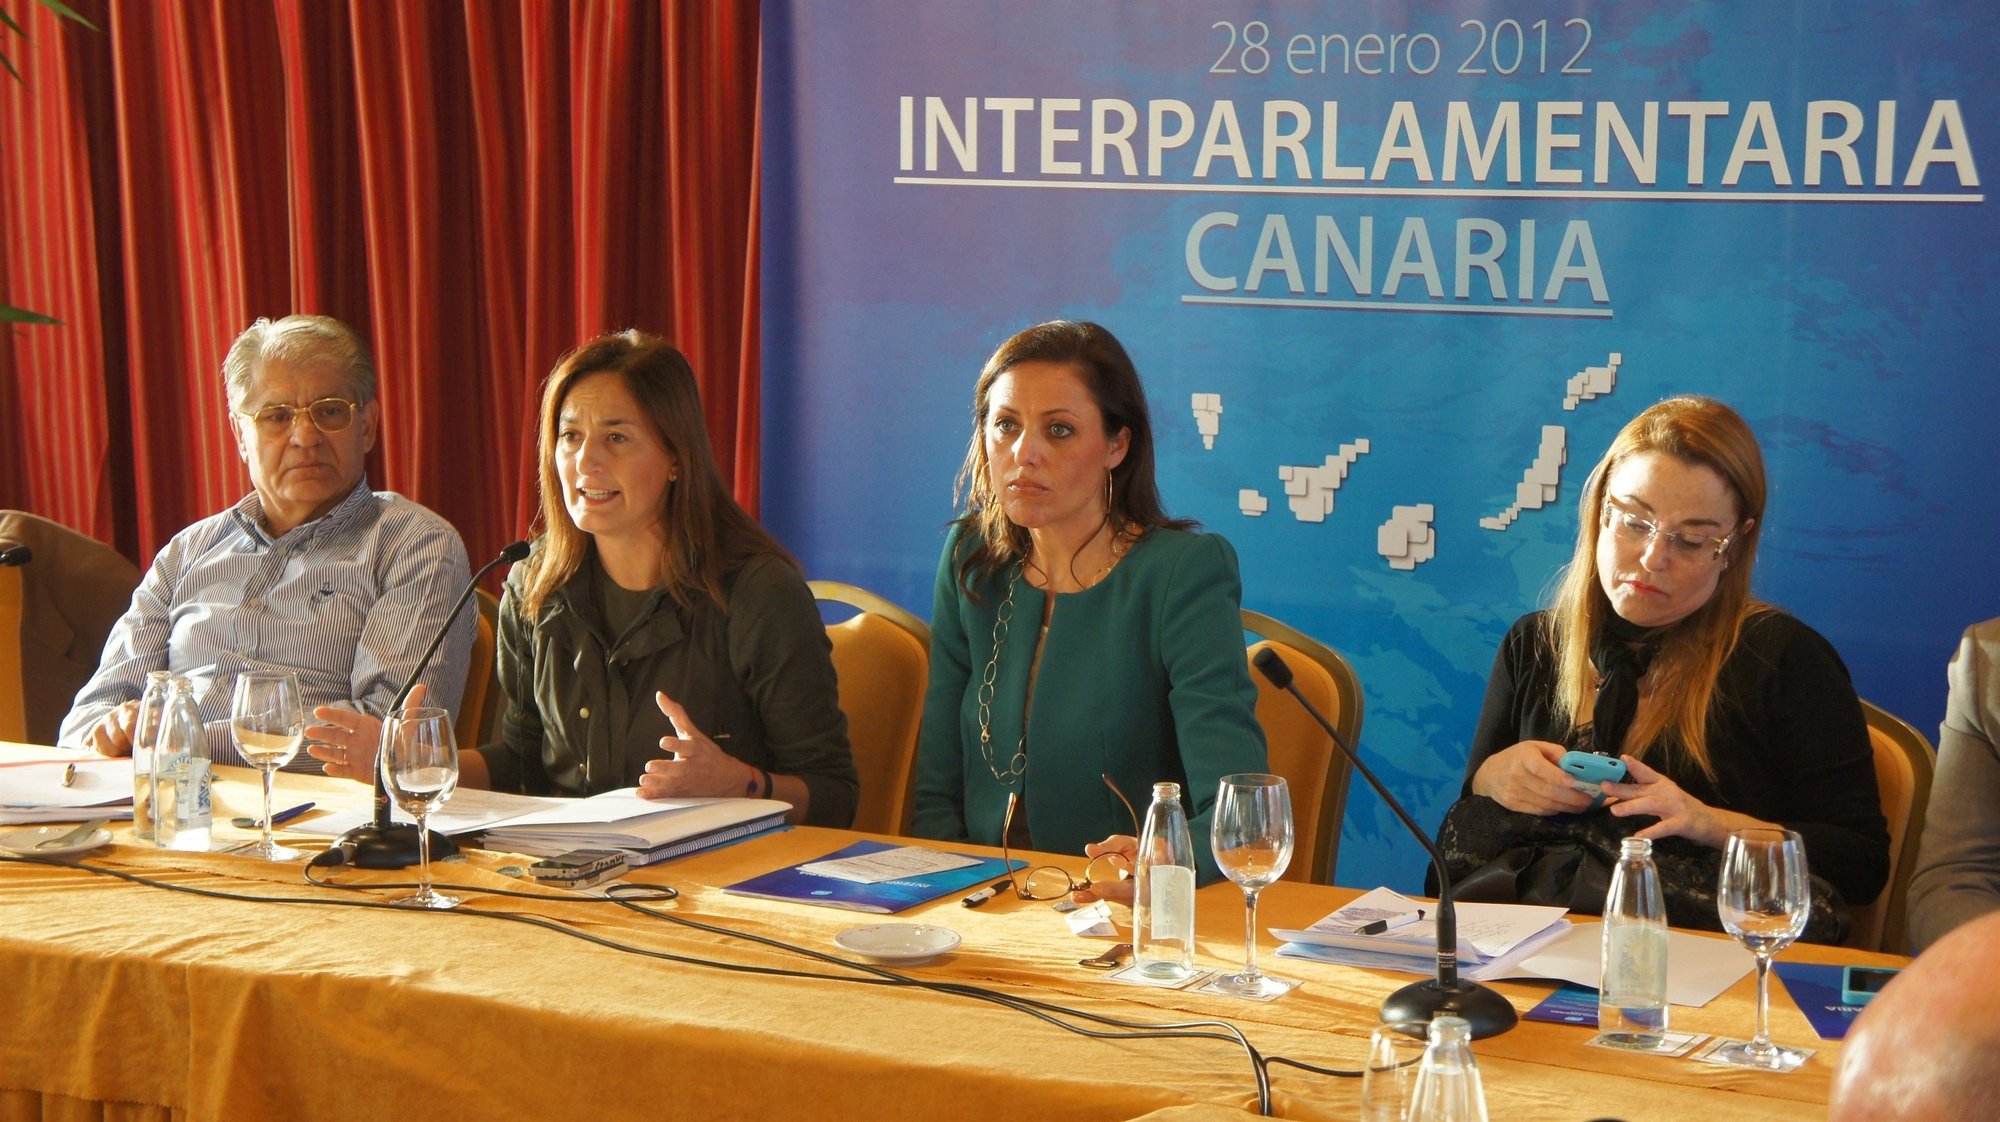 PP ve en la simplificación de normativa, la quinta libertad aérea y la rehabilitación las claves del turismo en Canarias